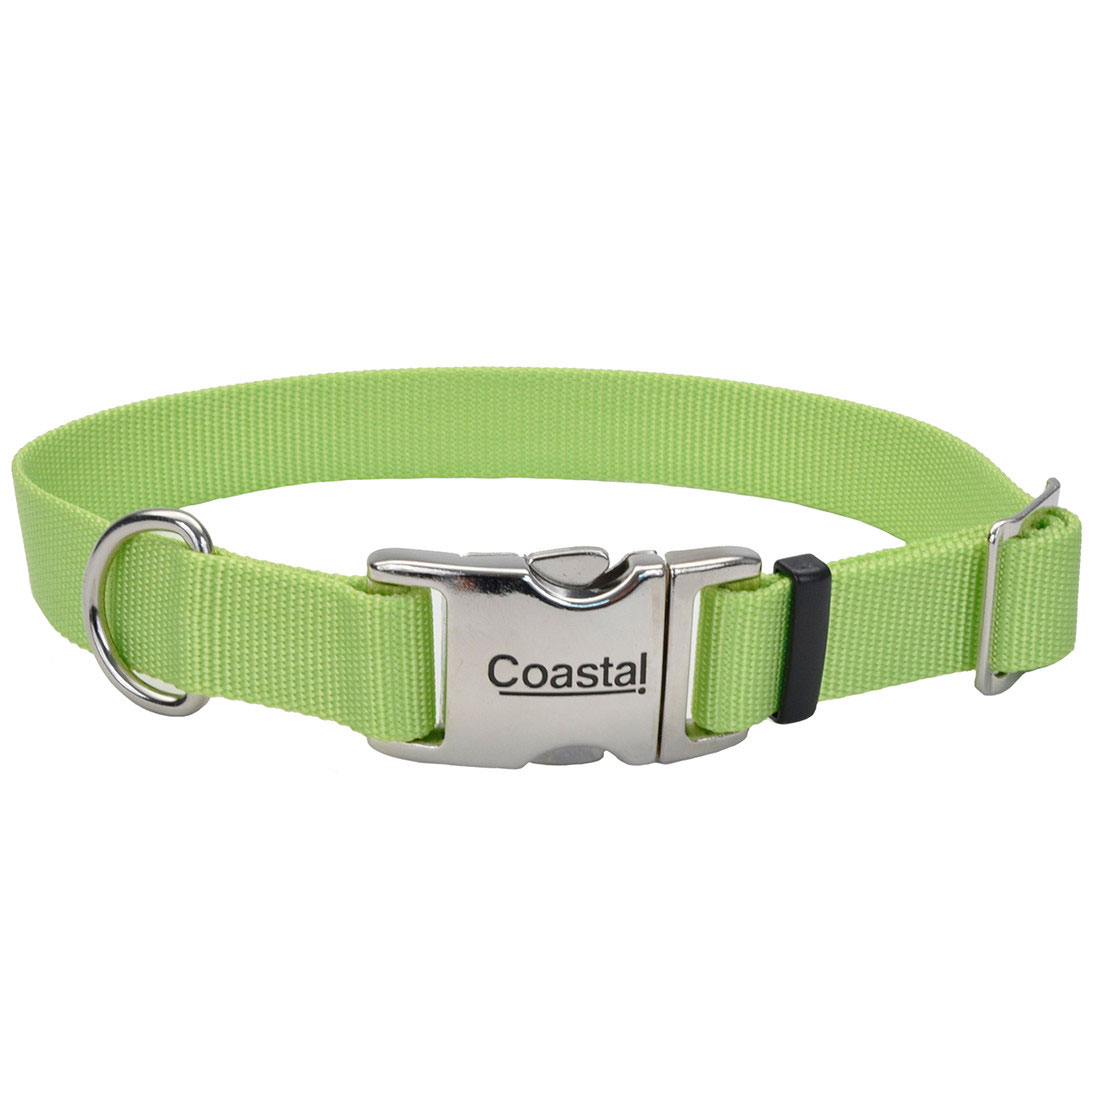 Coastal® Adjustable Dog Collar with Metal Buckle